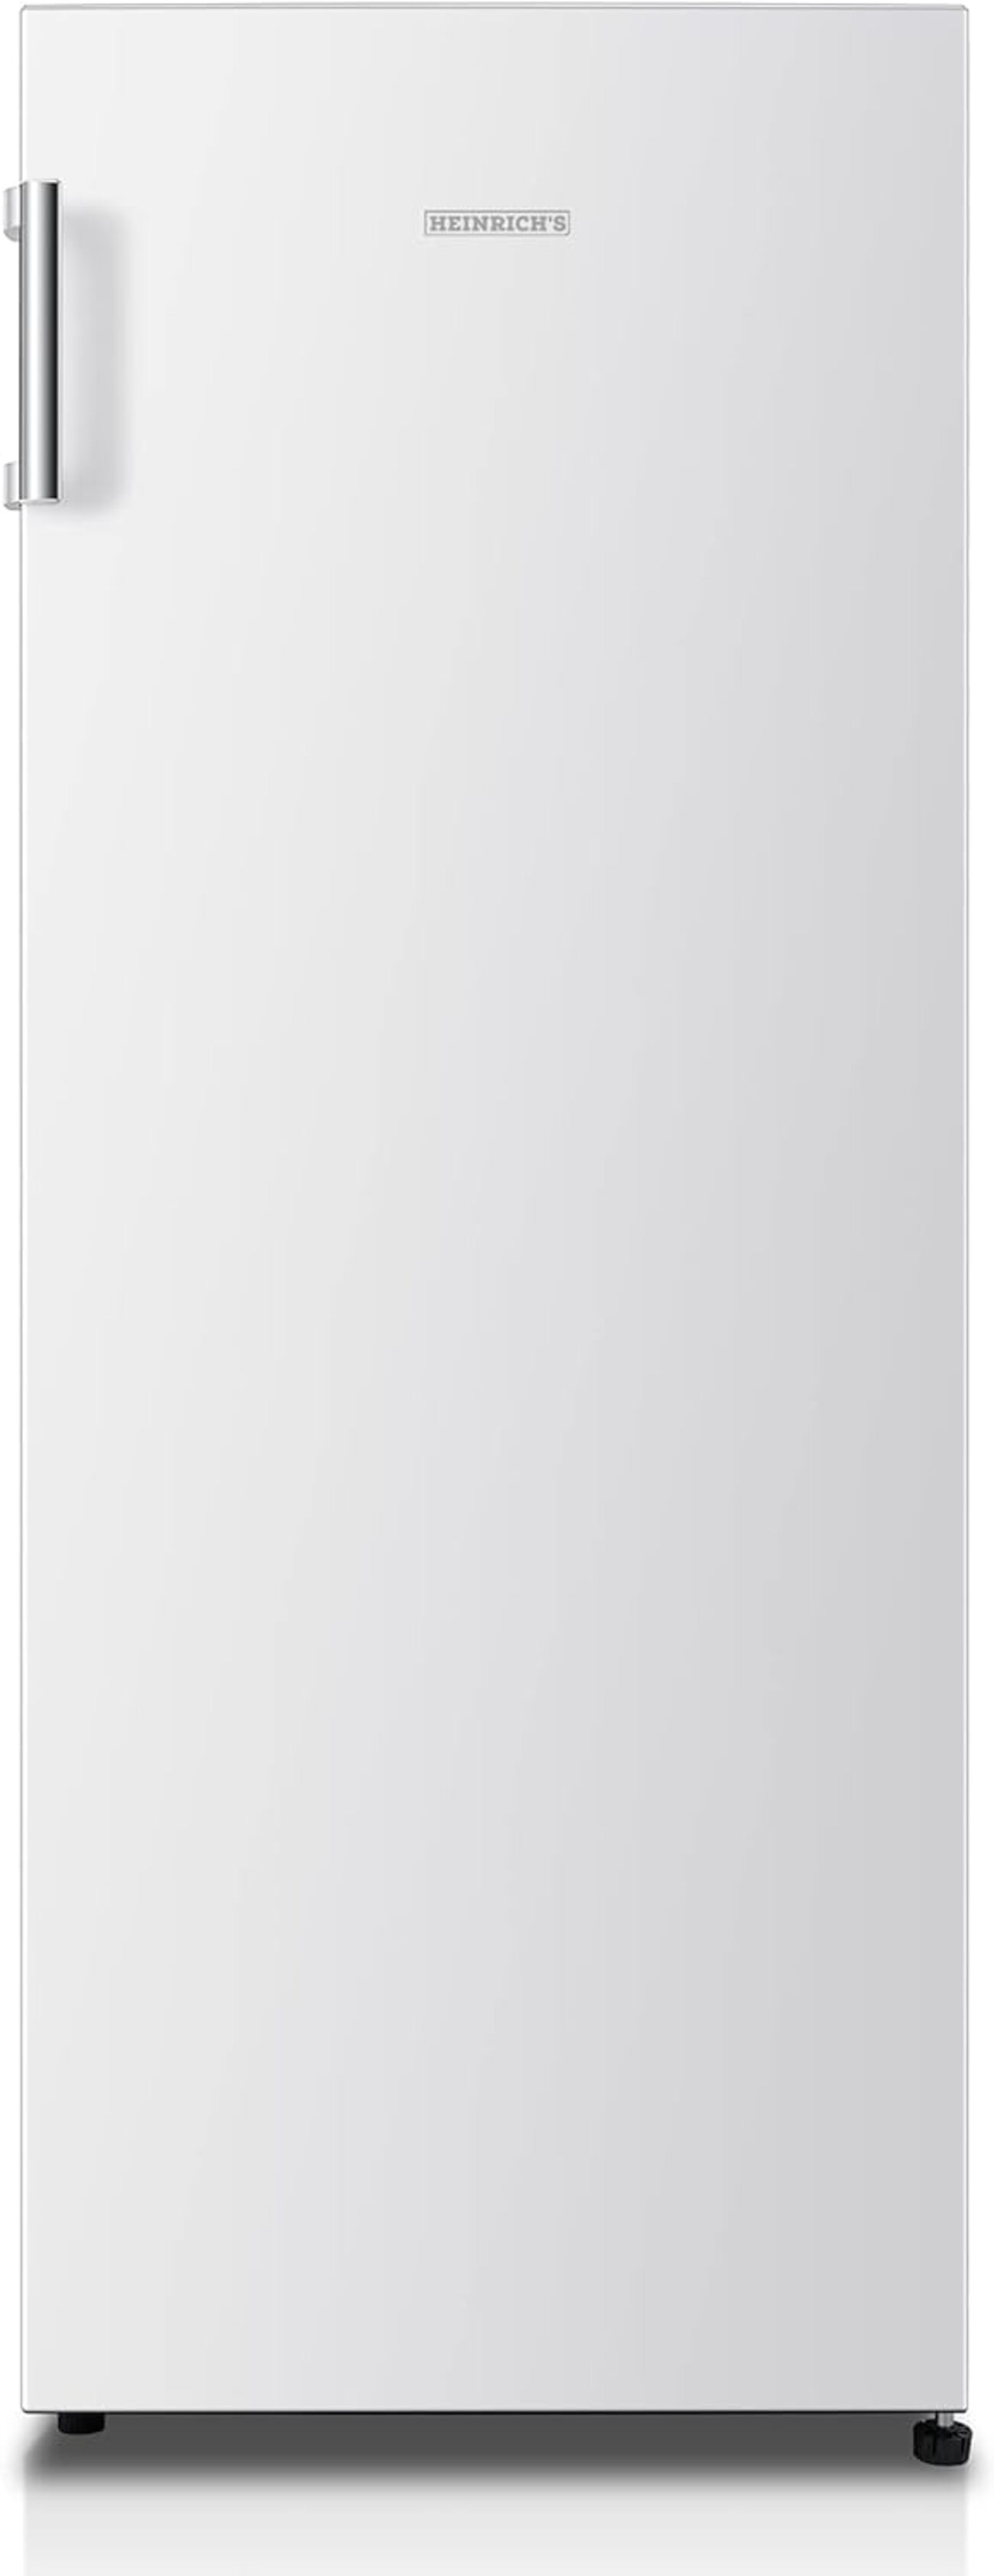 HEINRICHS HEINRICHS freistehender Kühlschrank 242L, Vollraumkühlschrank, weiss) LED-Beleuchtung, hoch, cm Kühlschrank 143,4 (E